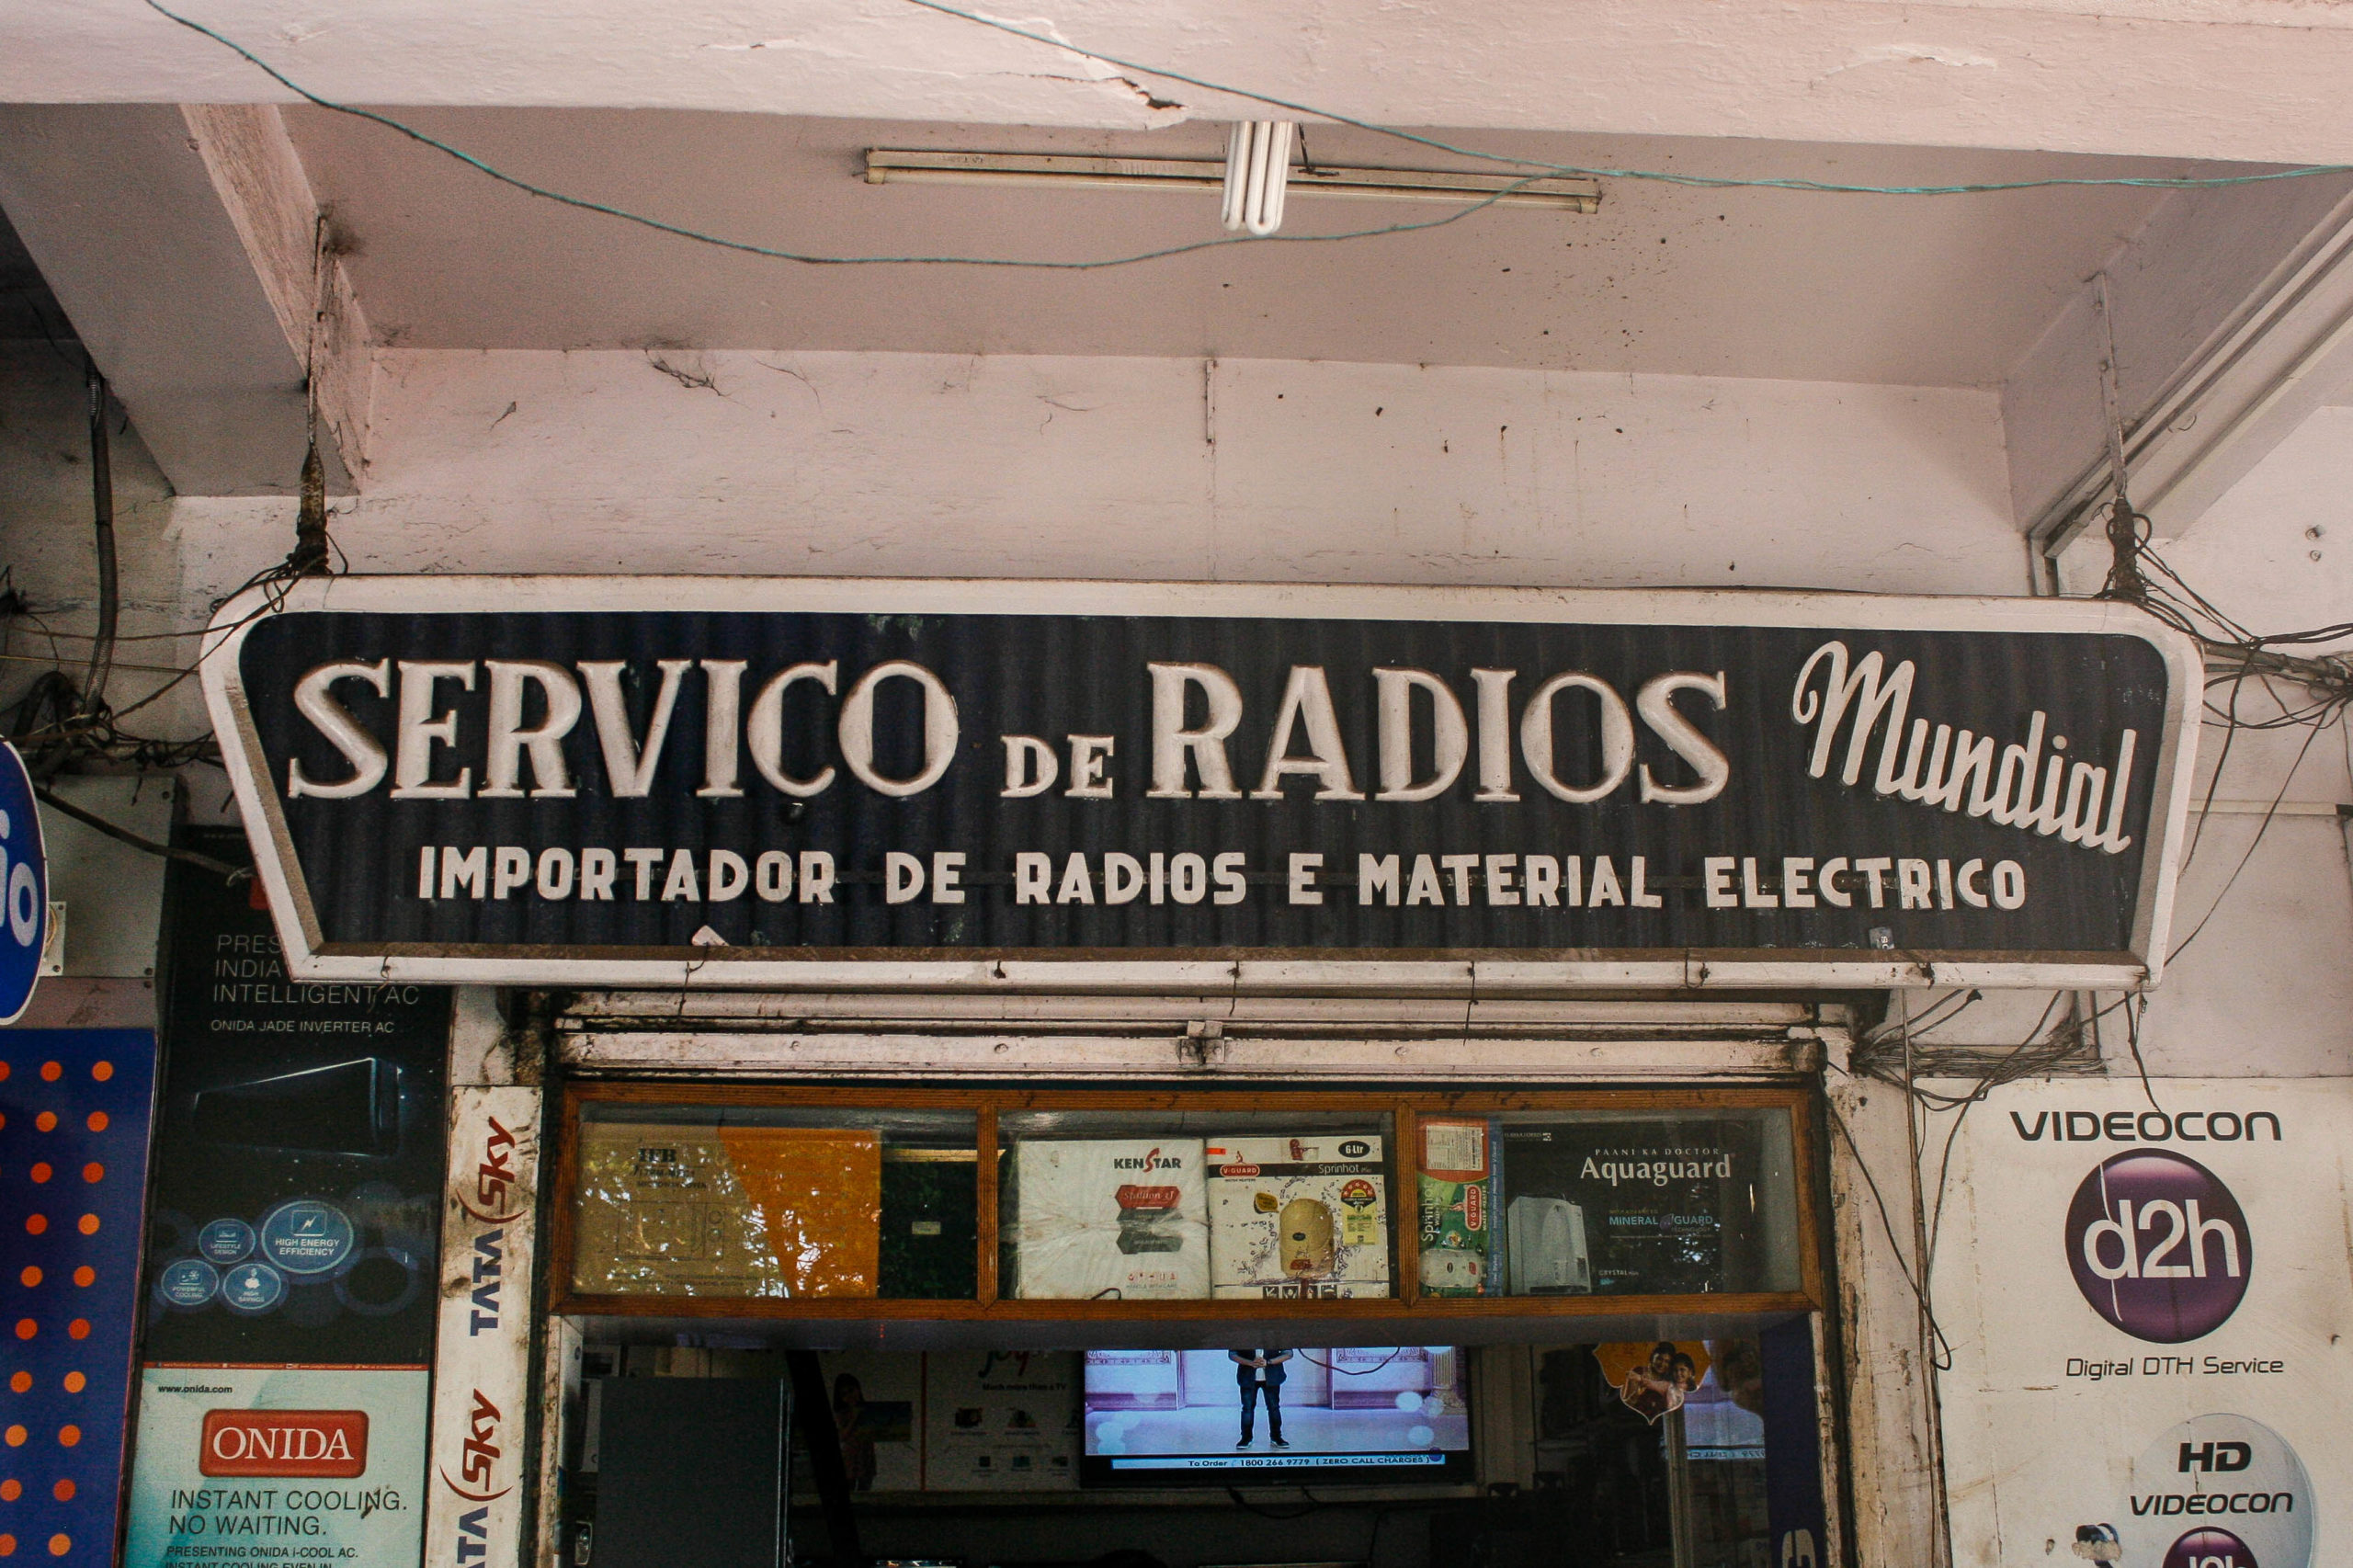 Servico de Radios Mundial